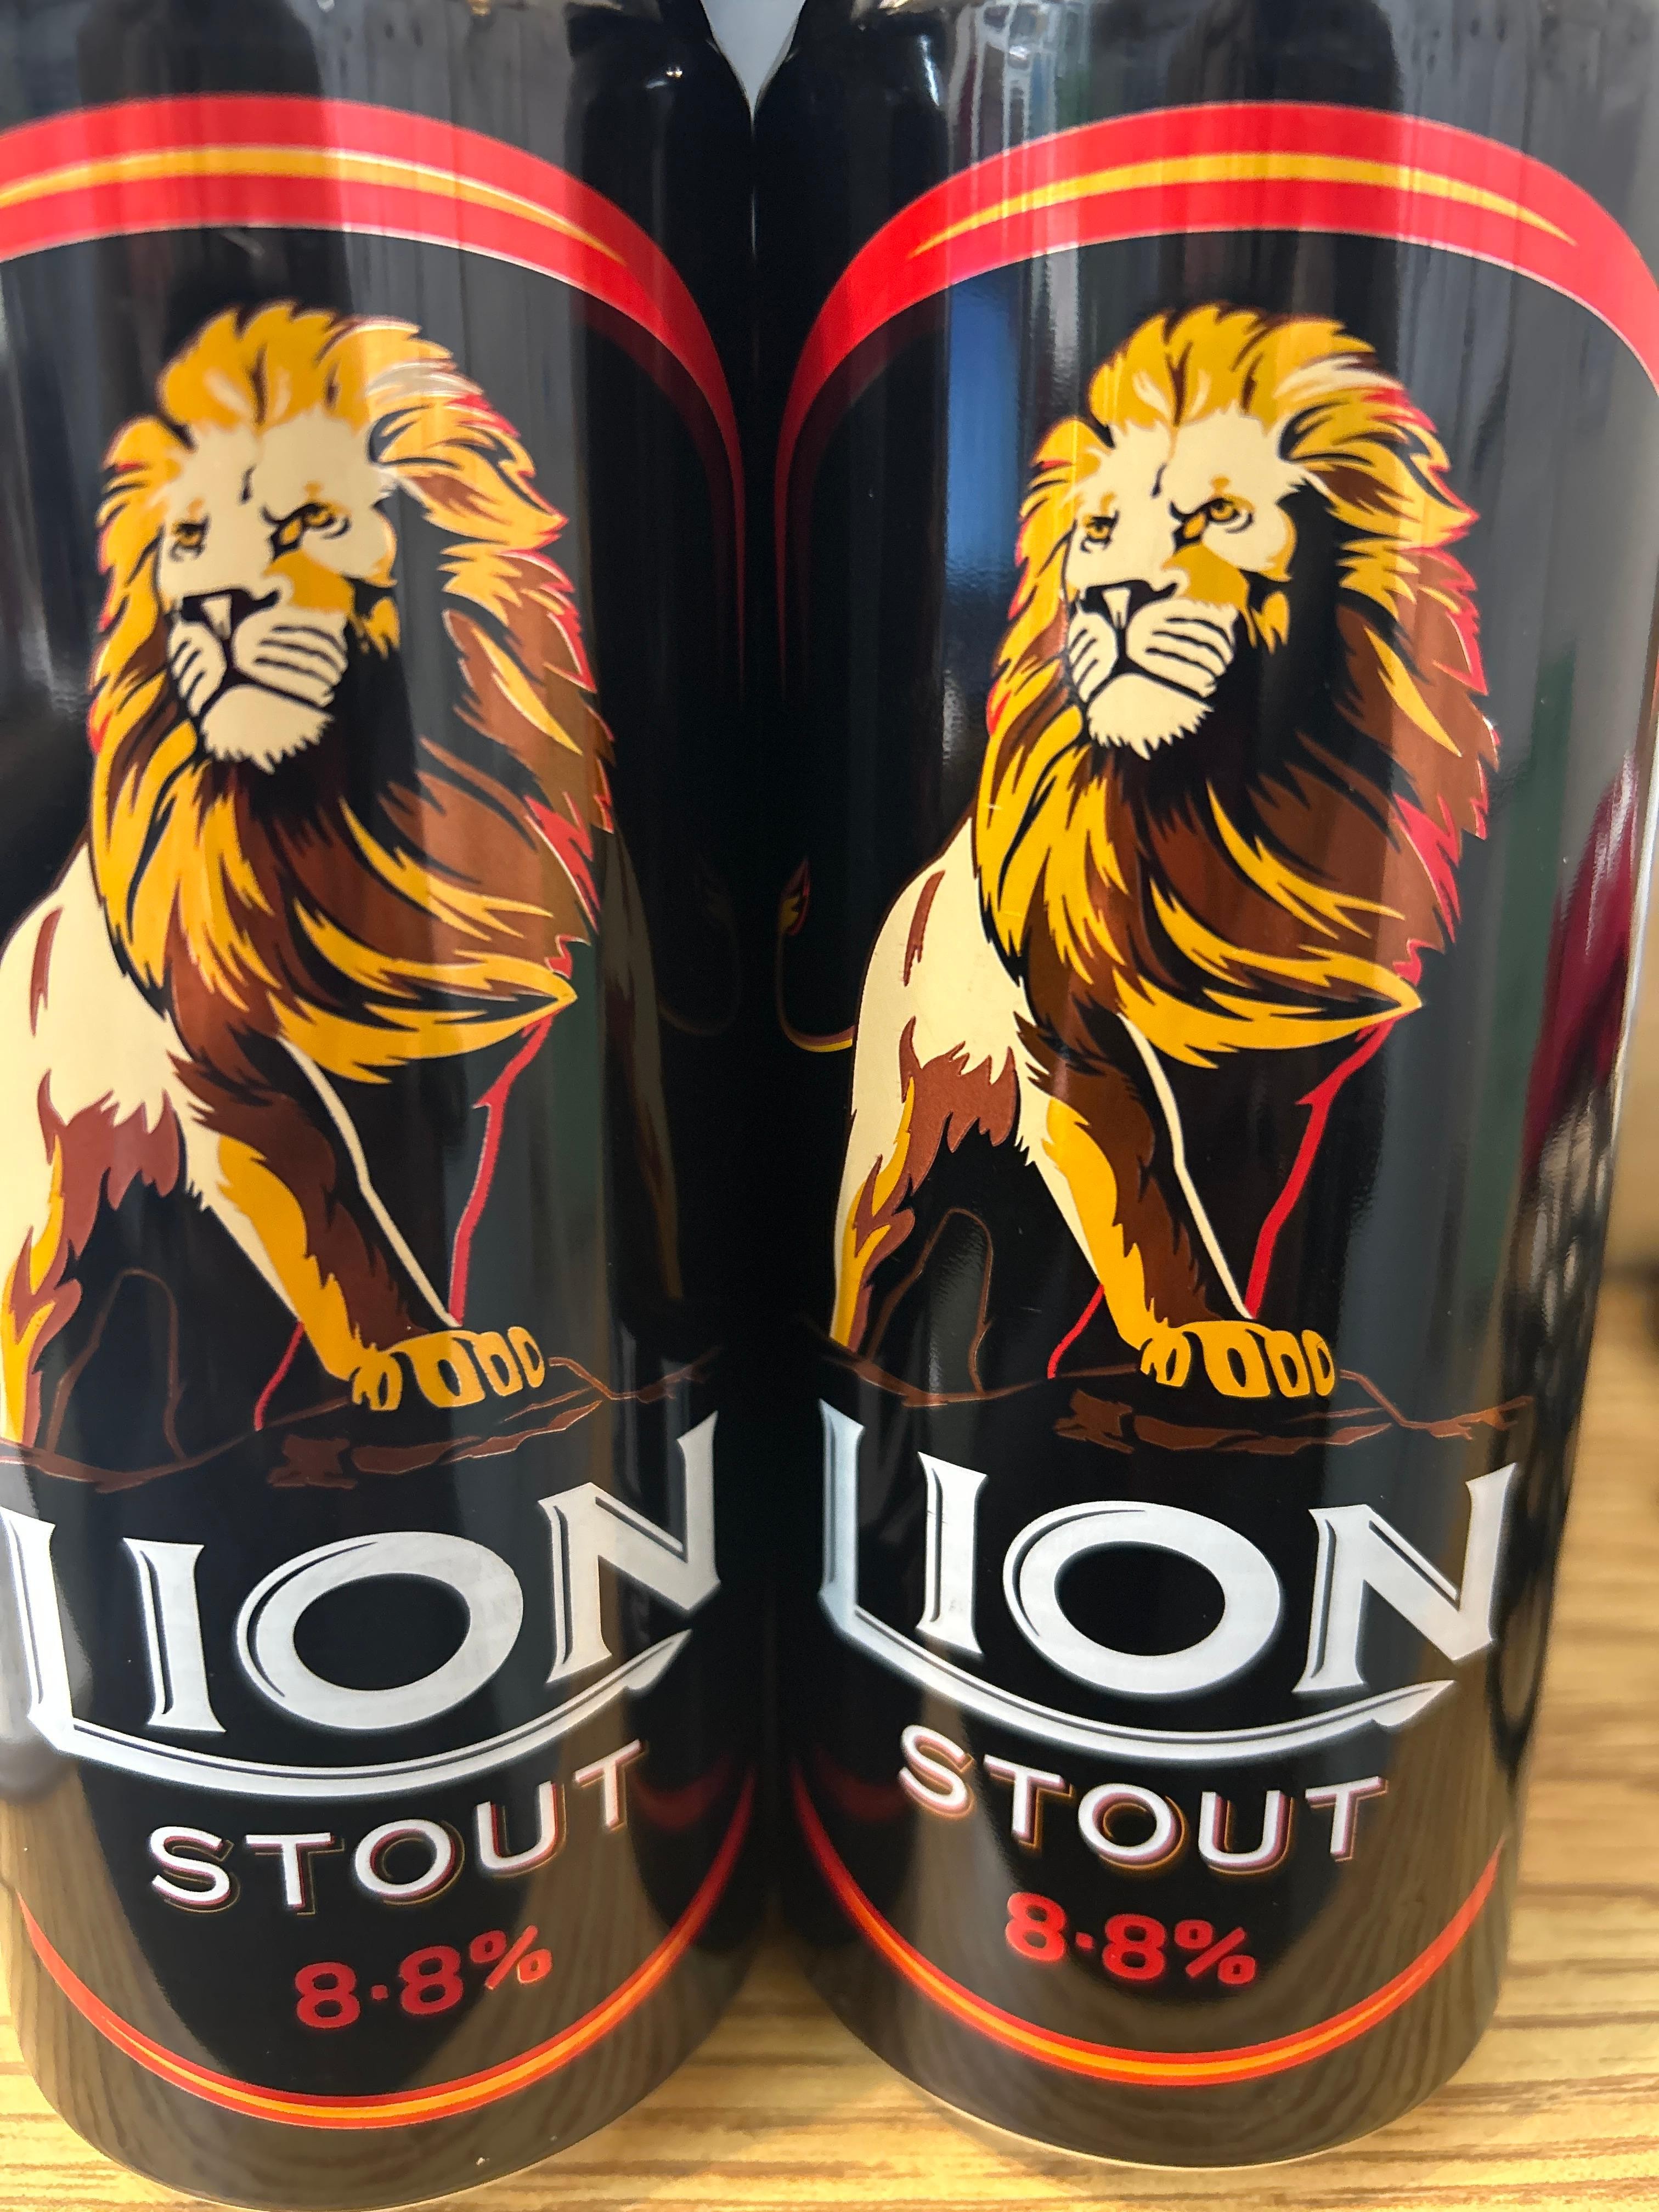 Lion Stout